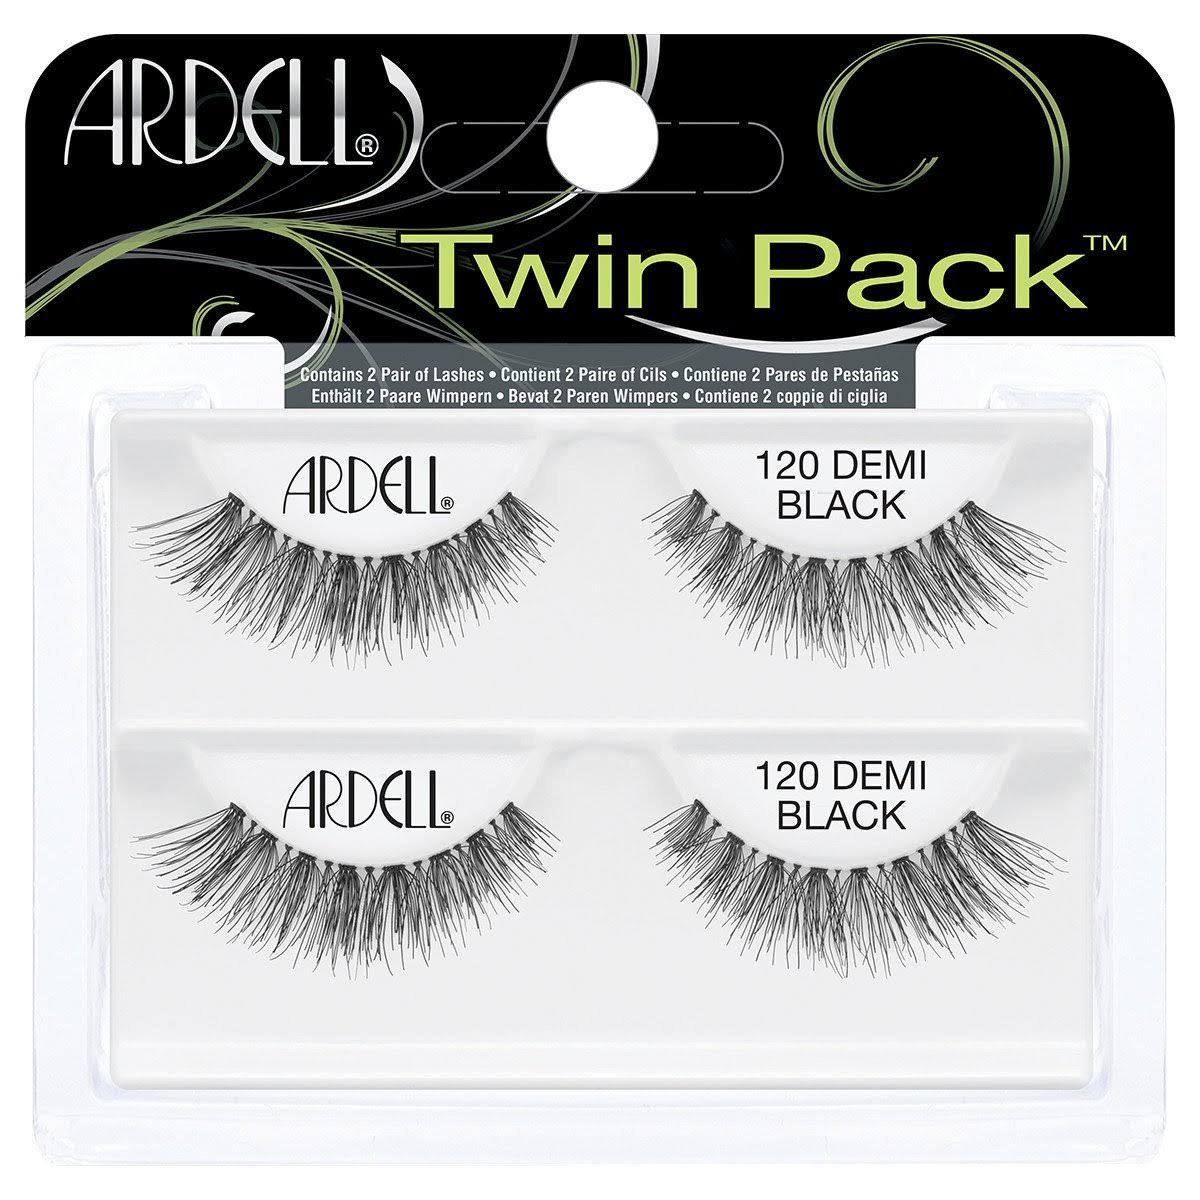 Ardell Twin Pack Lashes - 120 False Eyelashes Black